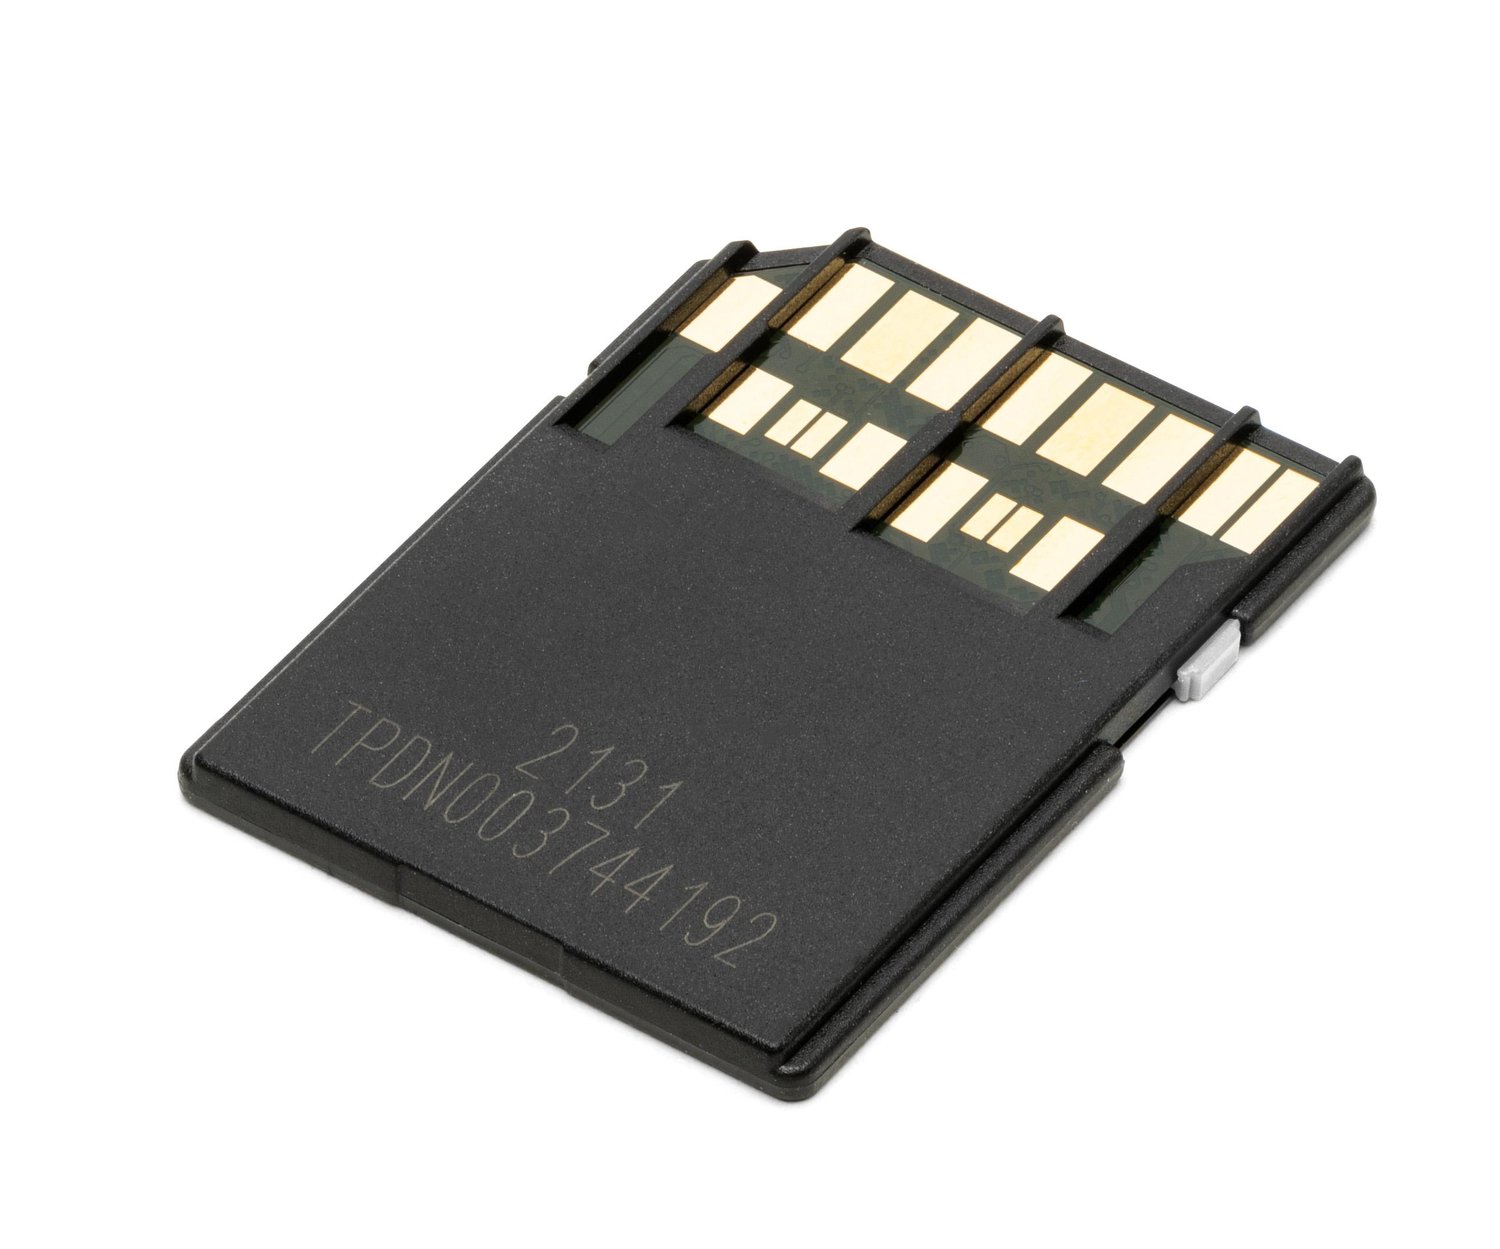 OWC 64GB Atlas Pro SDXC V60 UHS-II Memory Card at MacSales.com